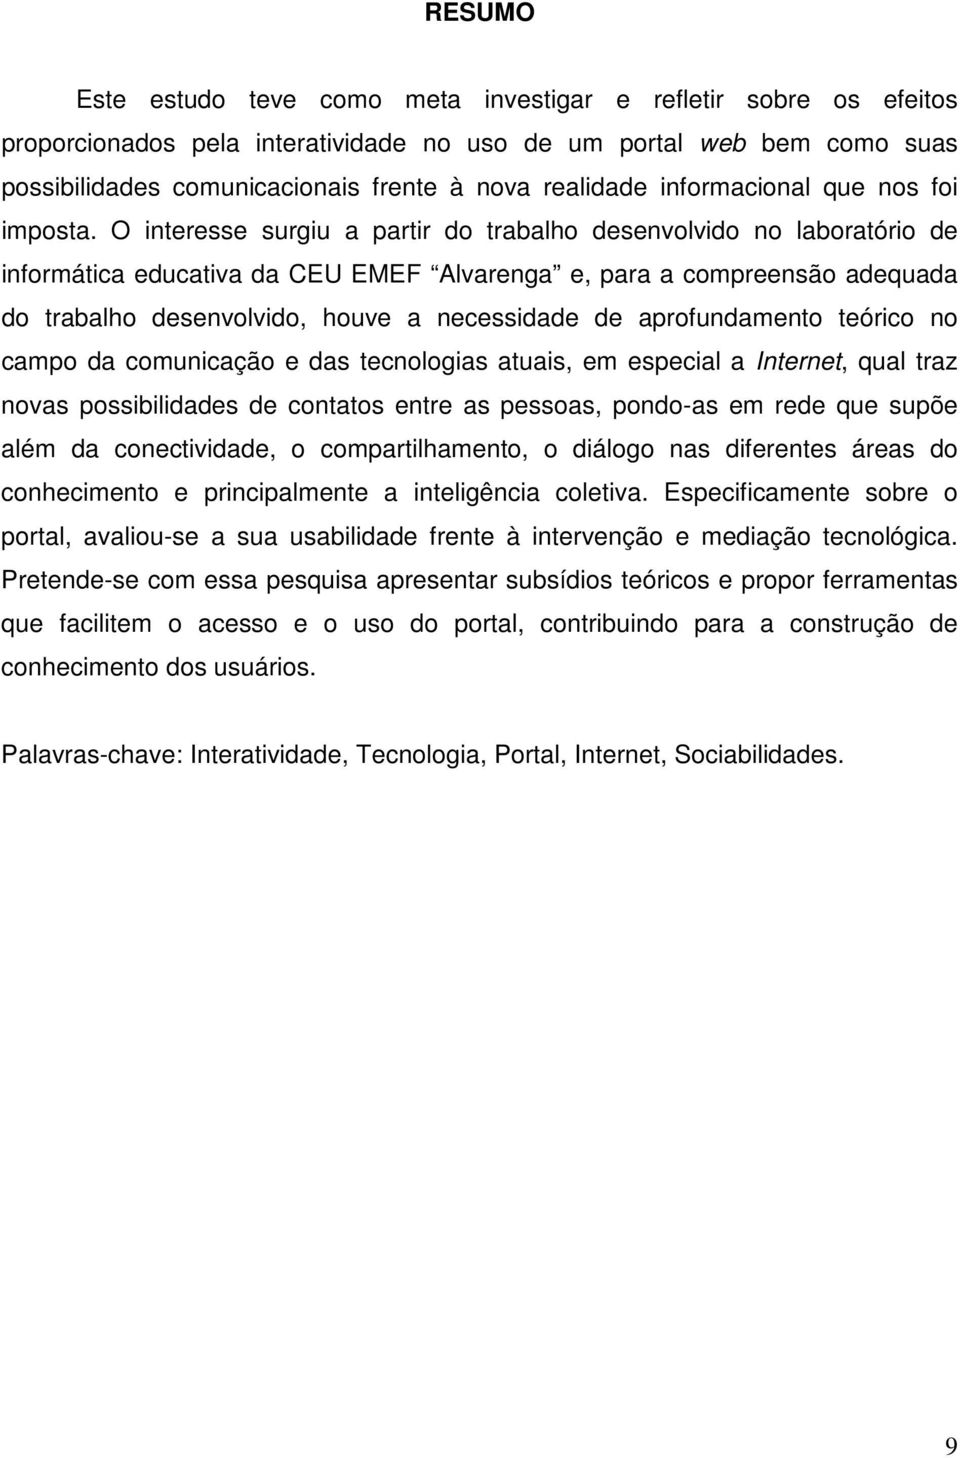 O interesse surgiu a partir do trabalho desenvolvido no laboratório de informática educativa da CEU EMEF Alvarenga e, para a compreensão adequada do trabalho desenvolvido, houve a necessidade de